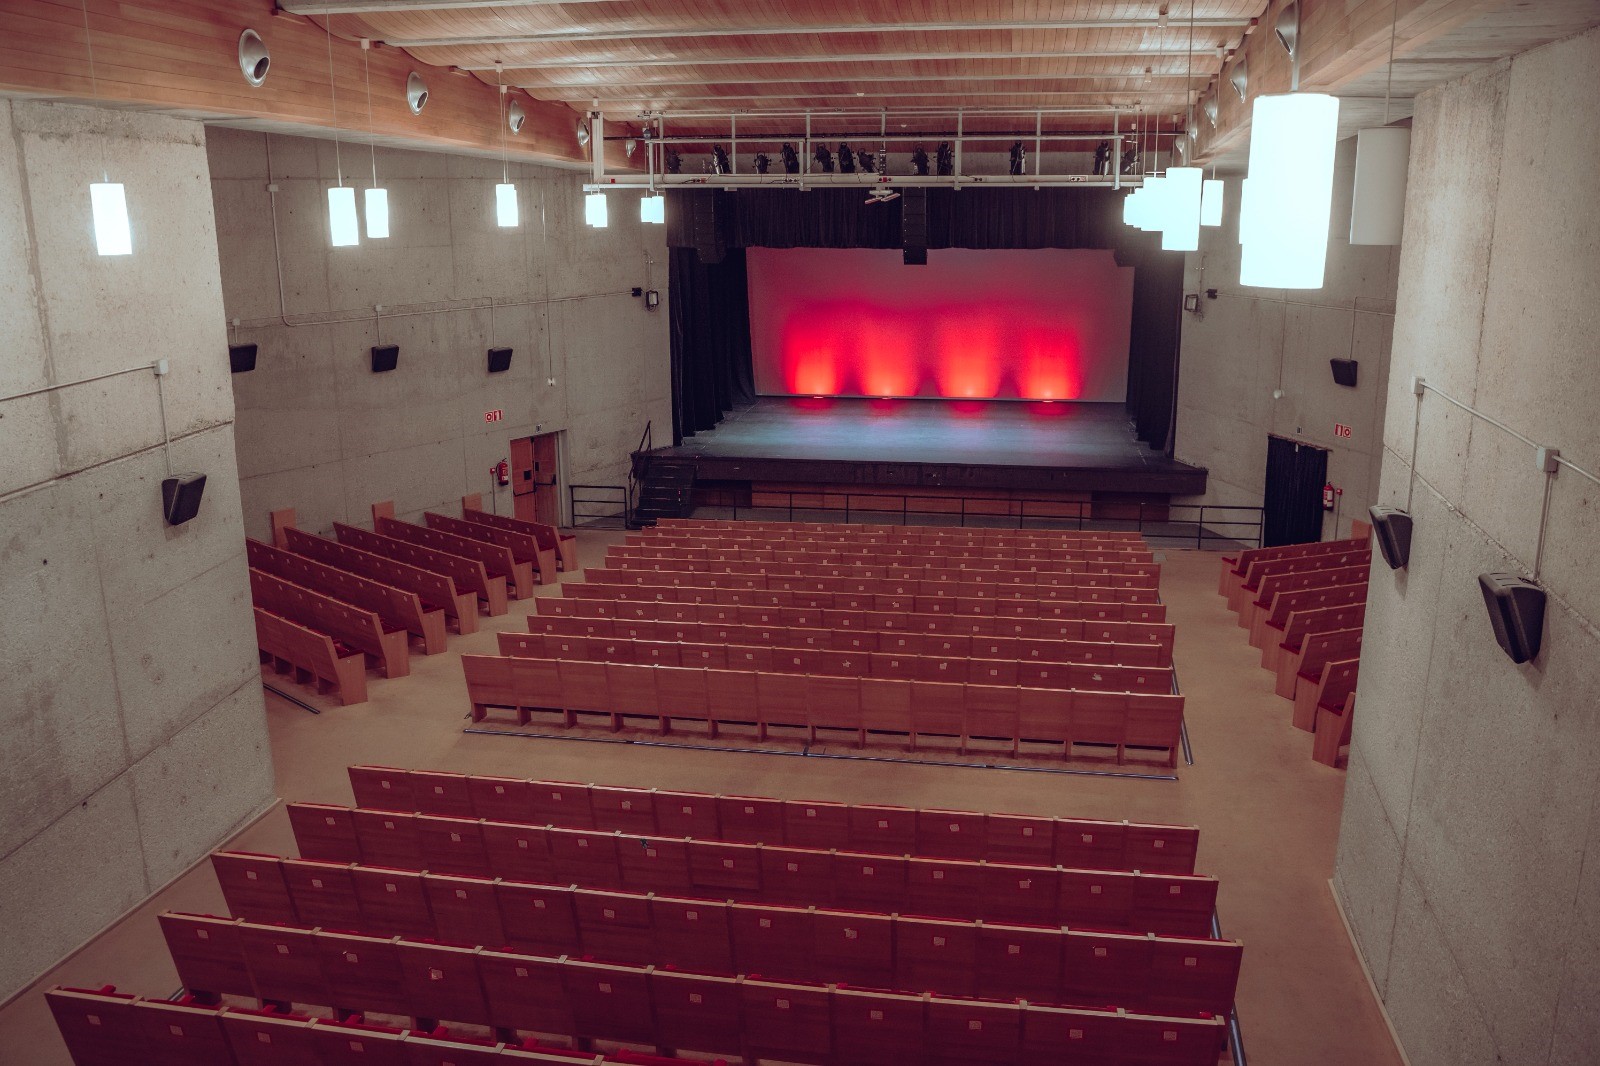 Auditorio Colmenar Viejo renovará el patio de butacas y escenario